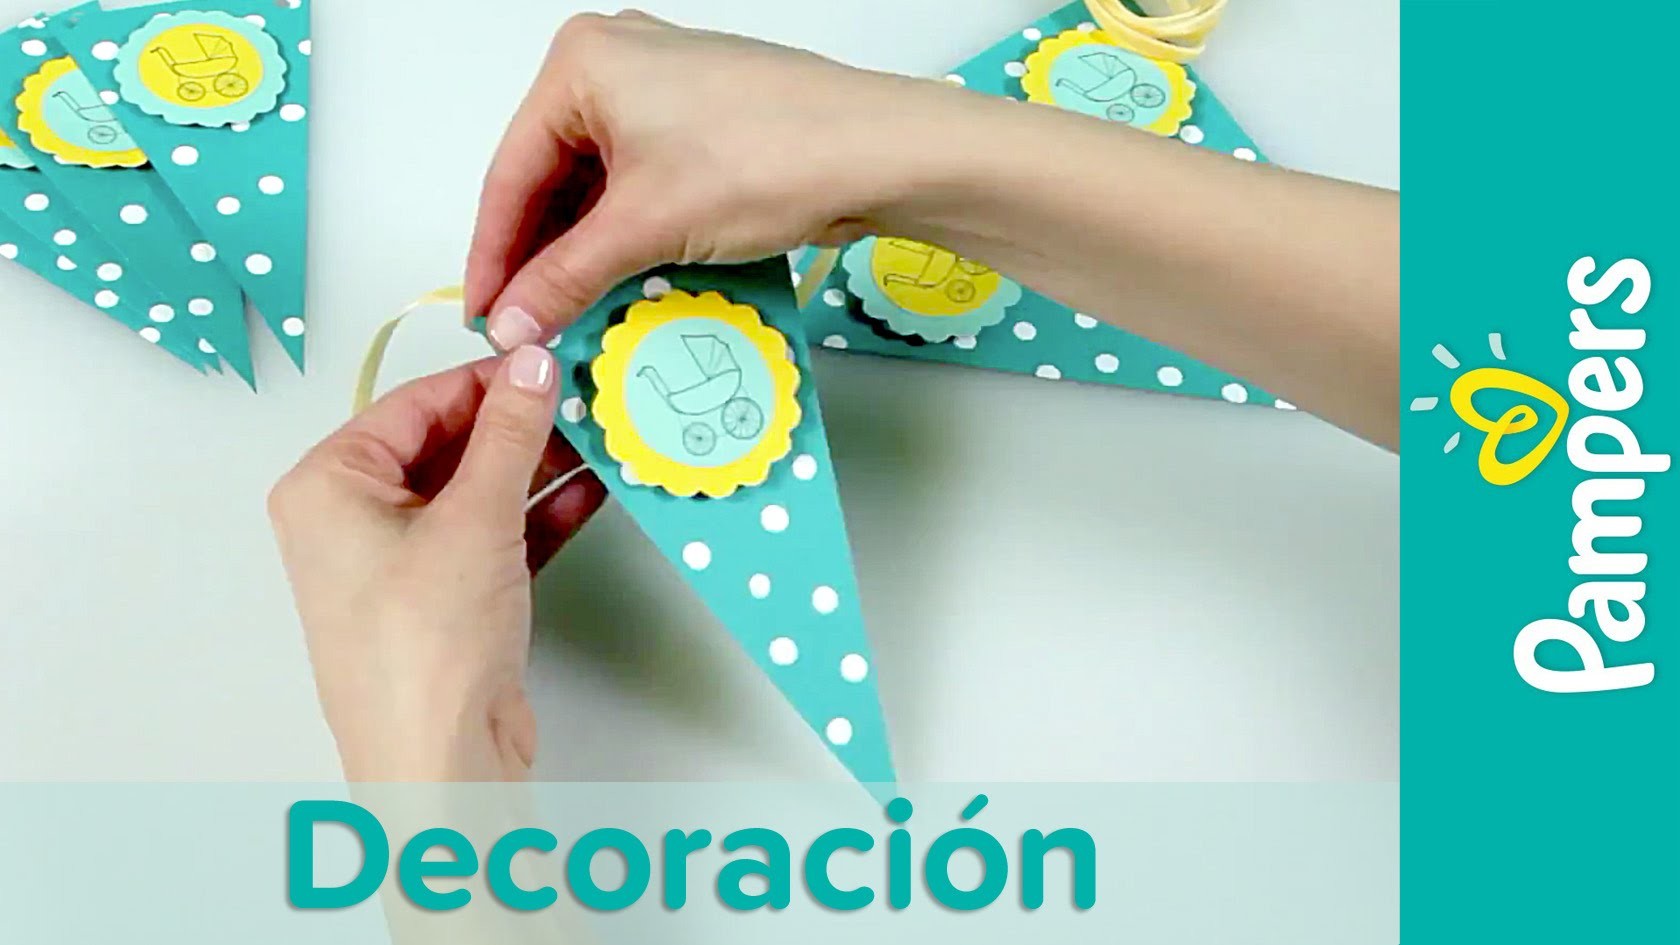 DIY Decoración Para Baby Shower: Guirnalda Decorativa | Pampers